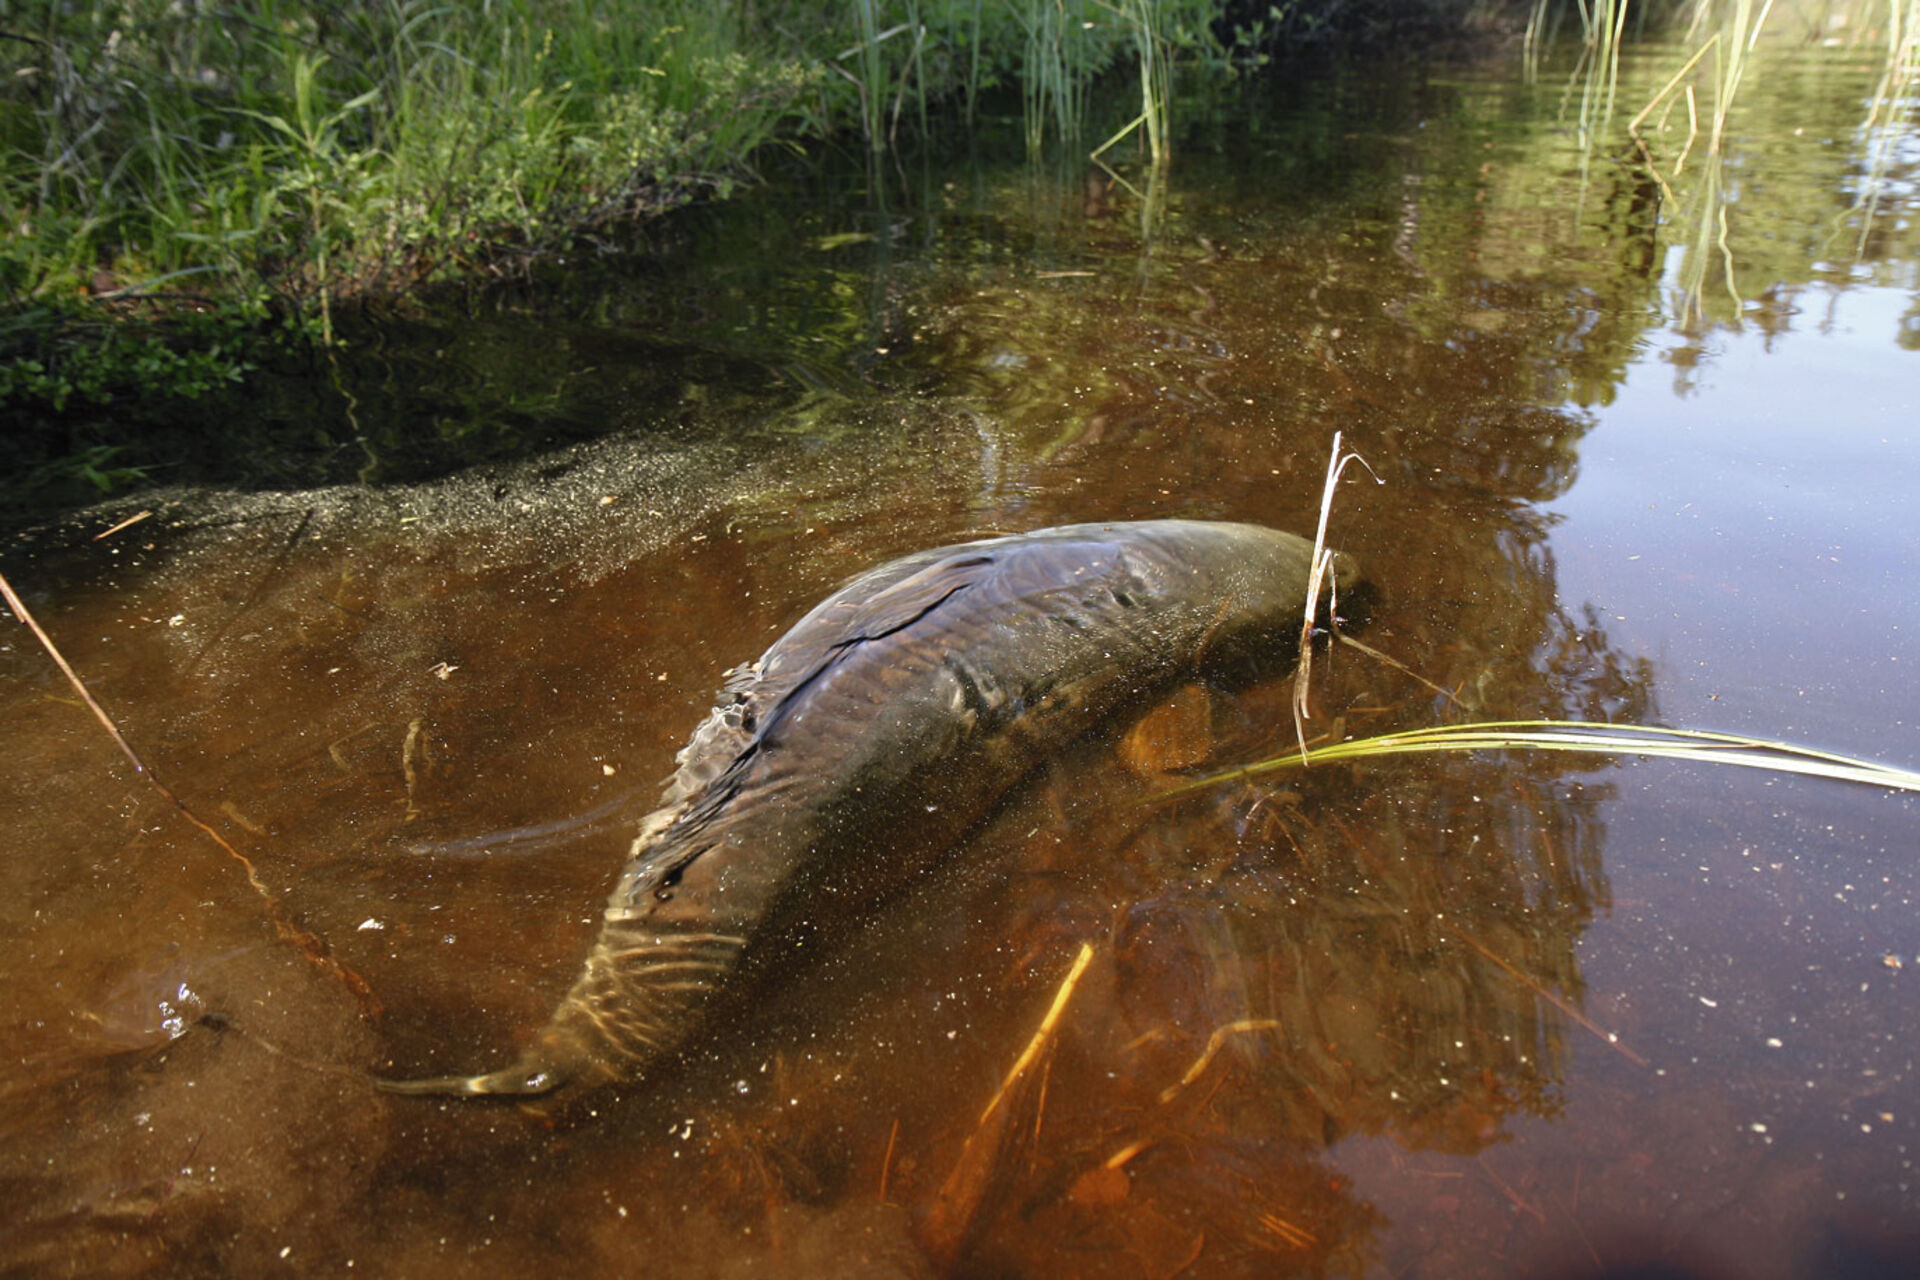  Ein gewaltiger Karpfen zieht im flachen Wasser am Ufer entlang – ein faszinierender Anblick.  